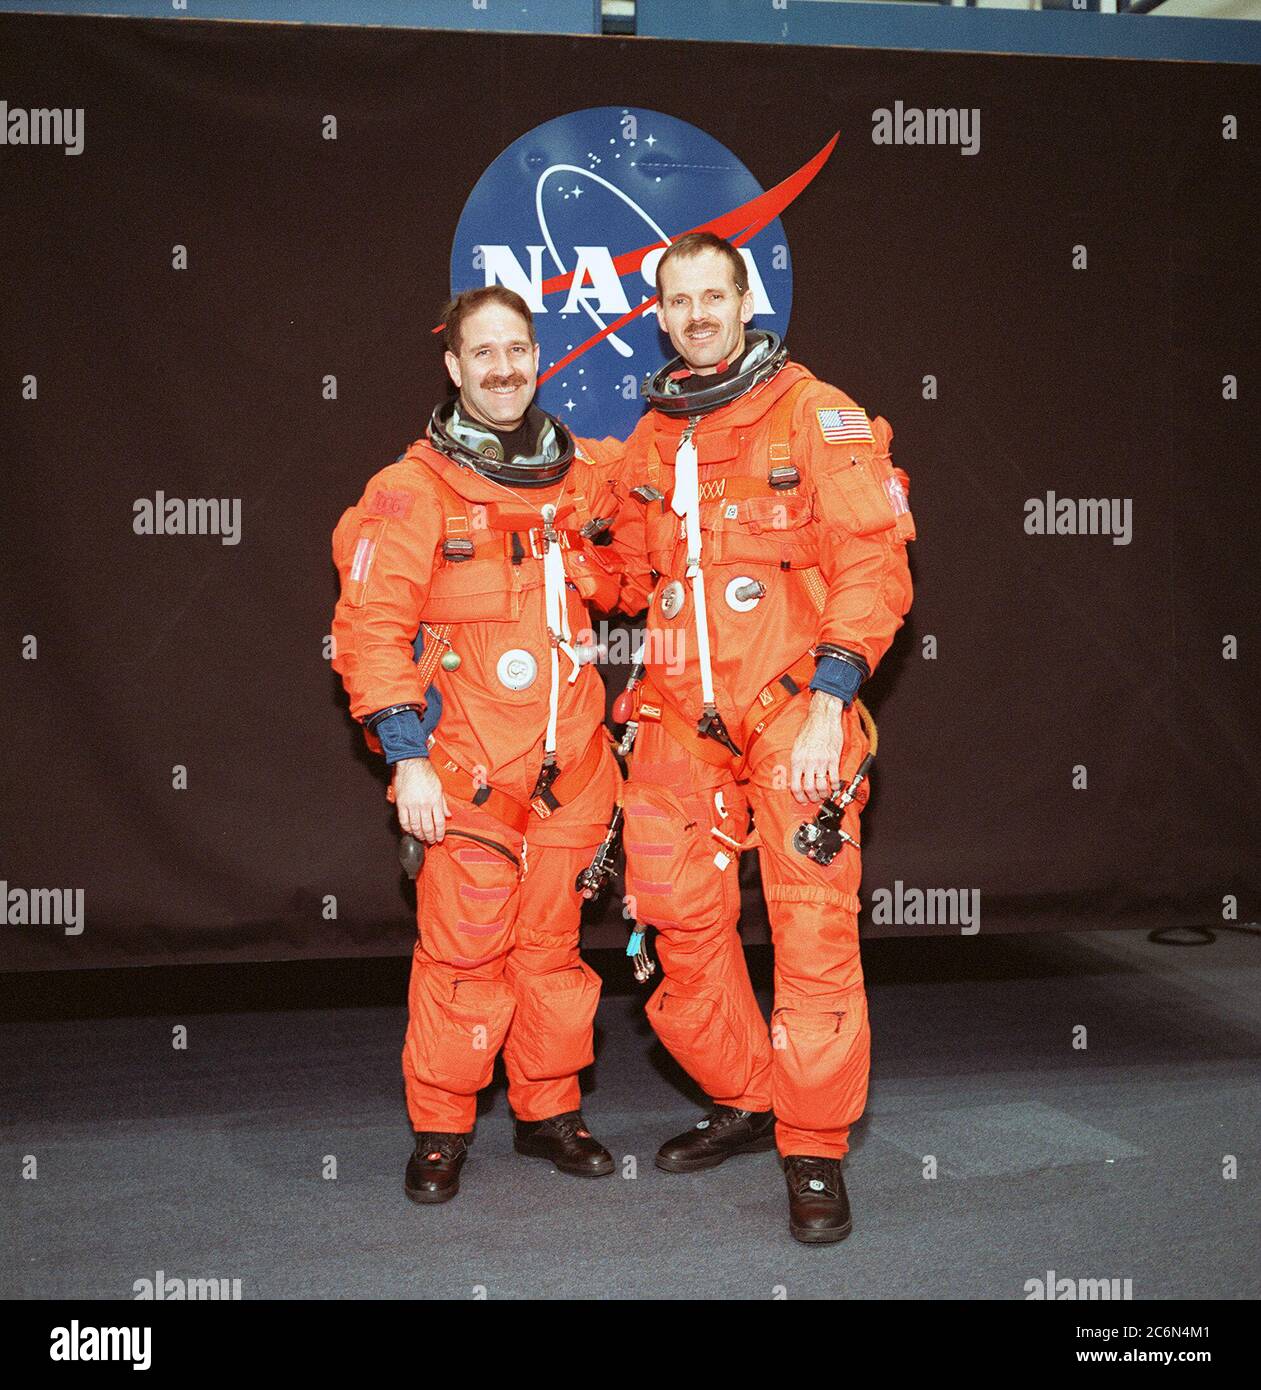 (24 maggio 1999) --- Astronauts John M. Grunsfeld (a sinistra) e Steven L. Smith, indossando versioni di addestramento del lancio e dell'indumento di entrata della navetta, posano per un ritratto informale prima di una sessione di addestramento di salvataggio di emergenza nella struttura di integrazione dei sistemi. Foto Stock